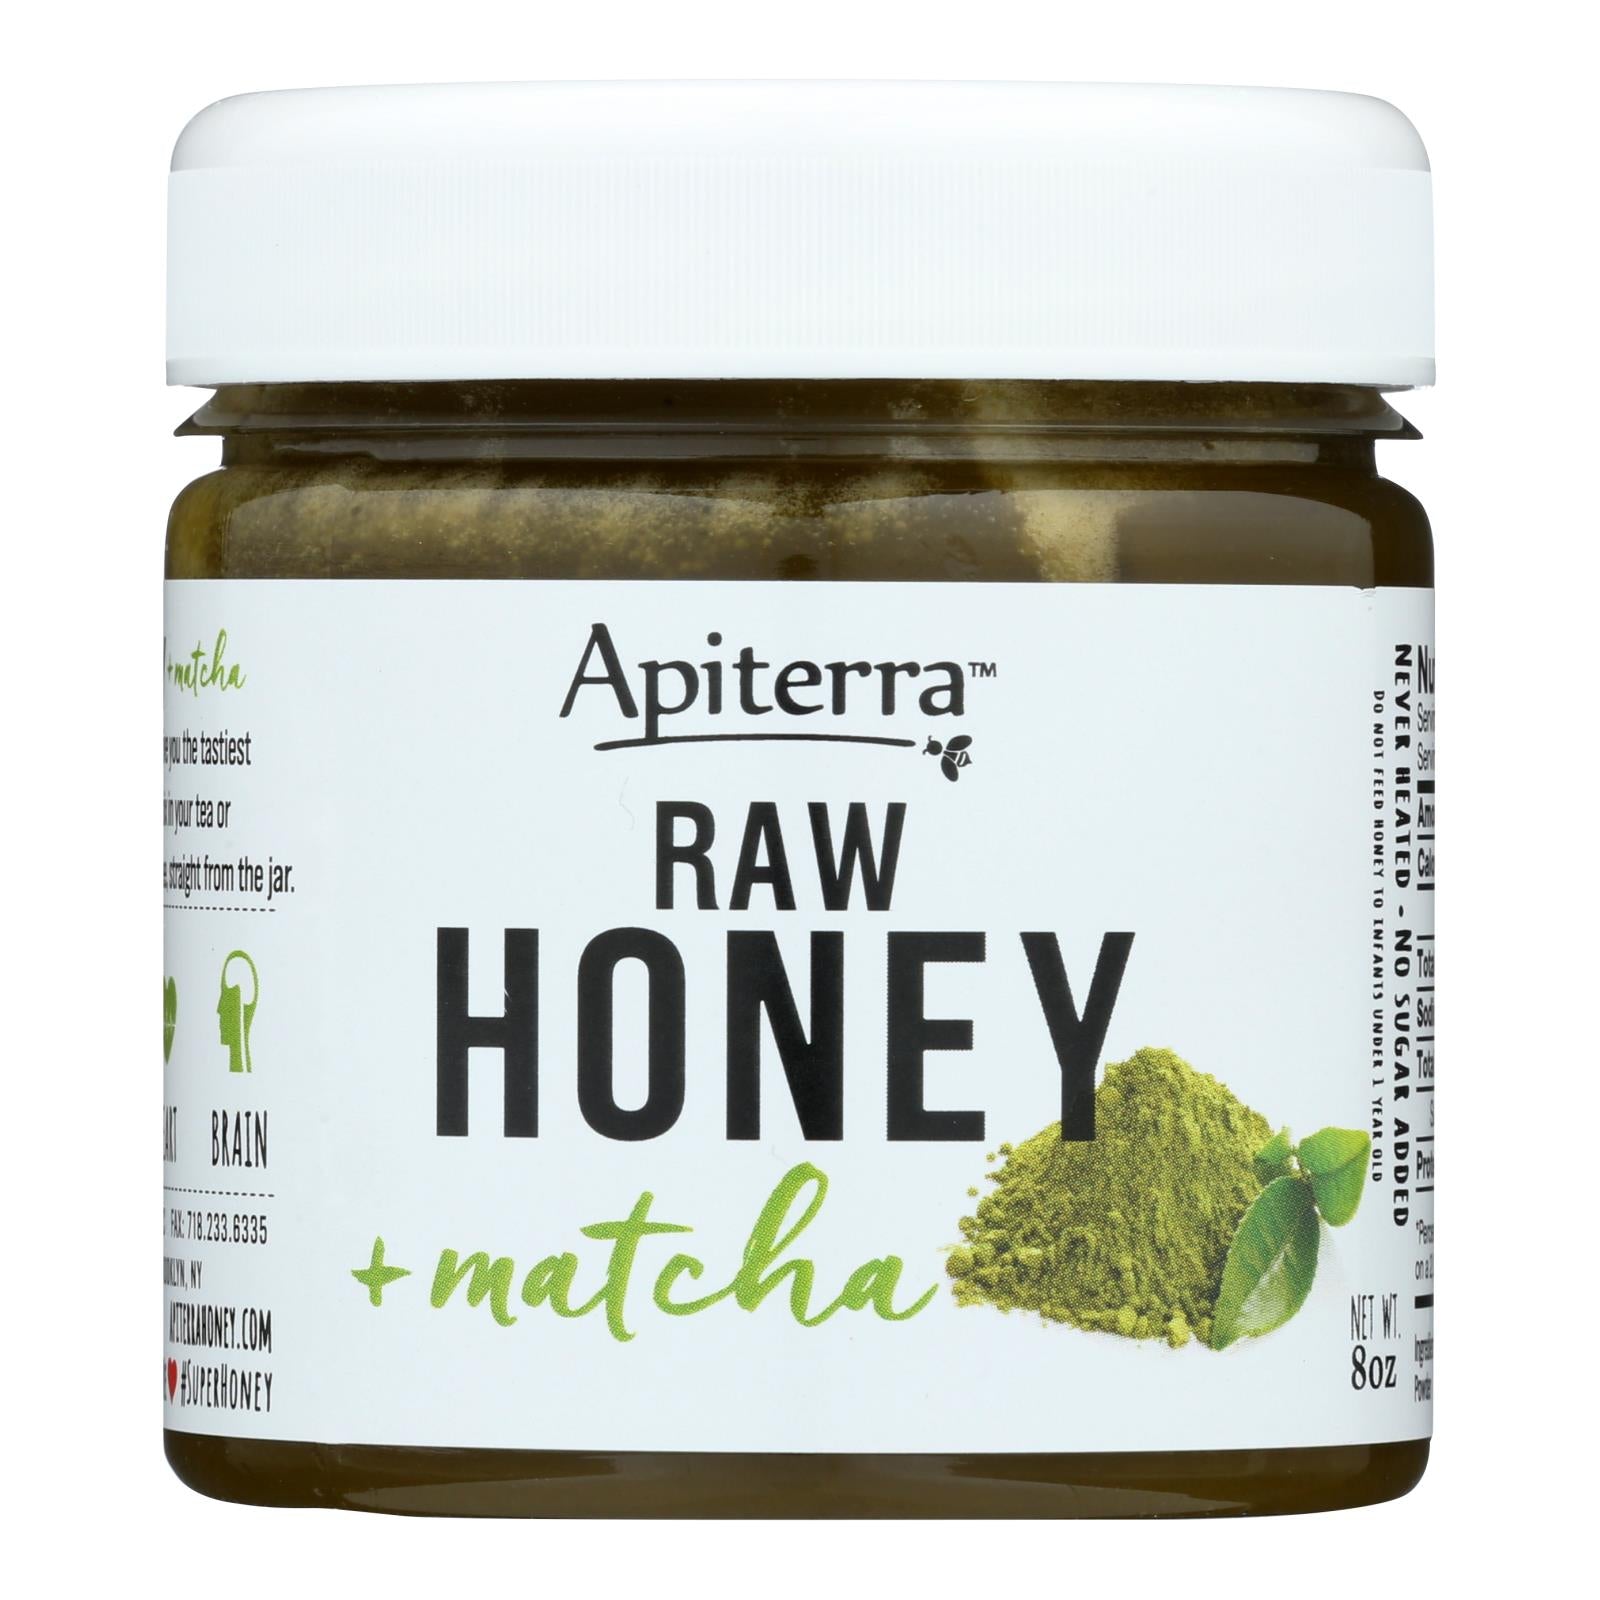 Apiterra, Apiterra - Raw Honey - Matcha - Case of 6 - 8 oz. (Pack of 6)